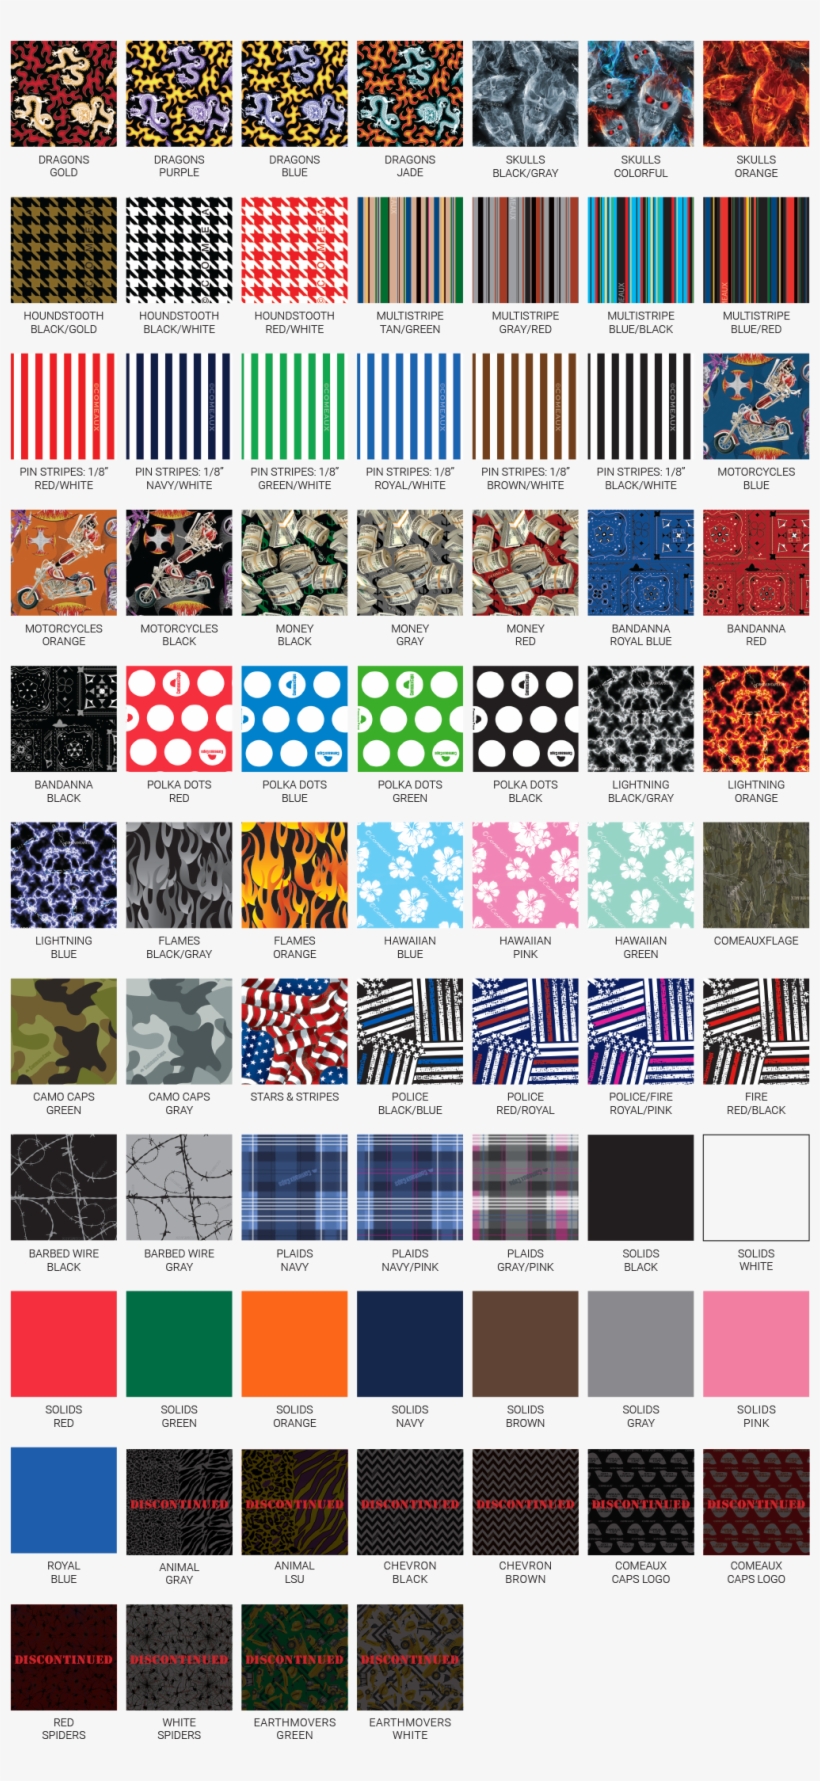 Comeaux Caps Original Patterns Welding Caps - Visual Arts, transparent png #8159779